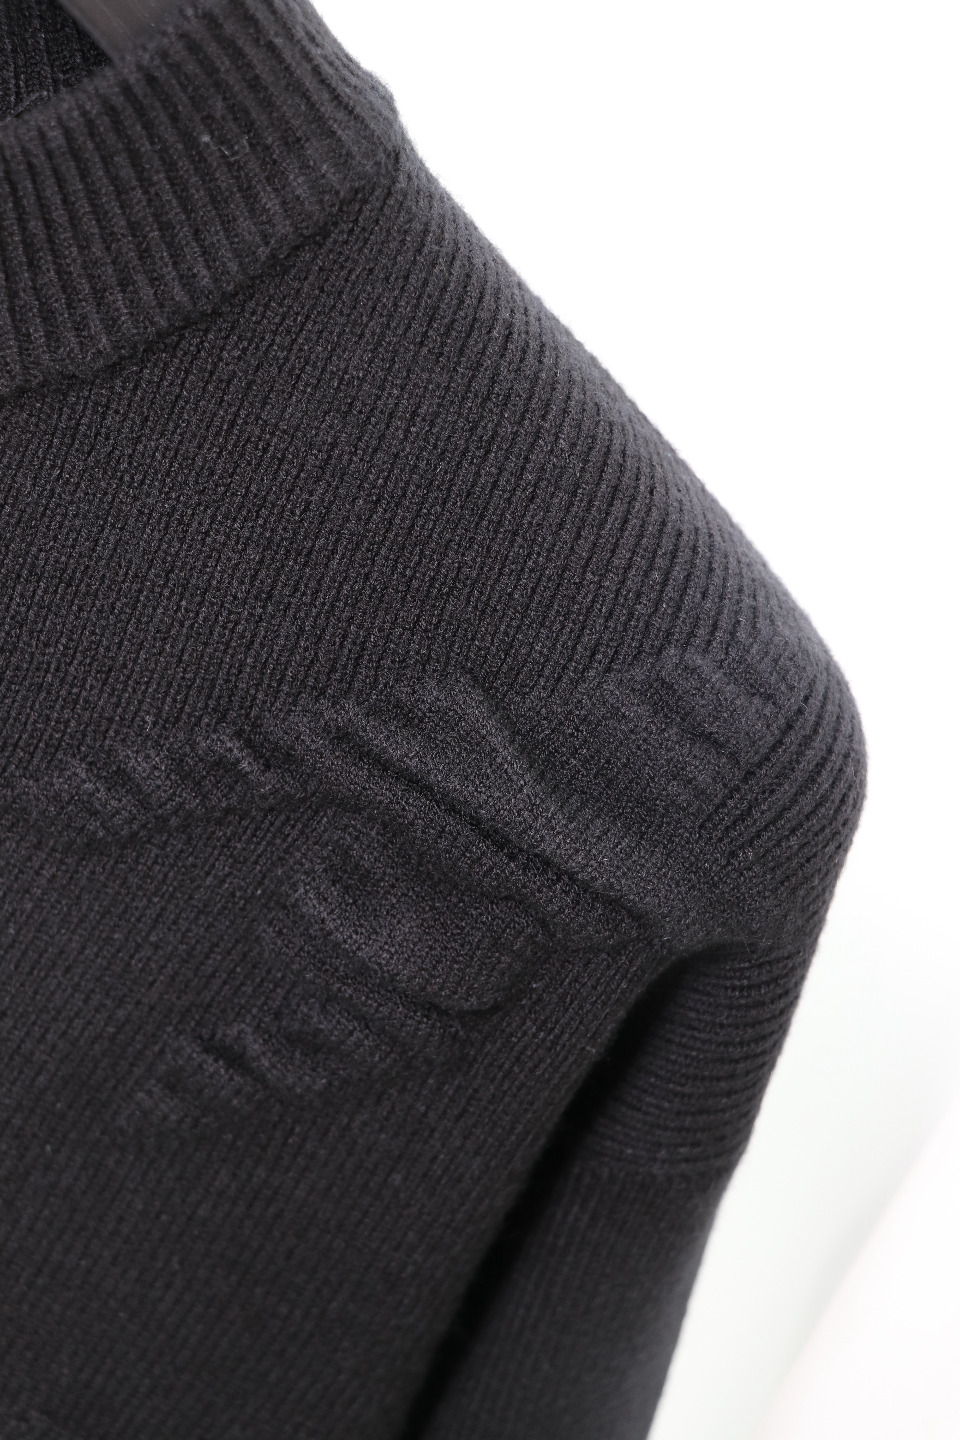 ジバンシィπｎ級品 GIVENCHY 新作シャツ 長袖セーター 柔らかくて暖かい トップス 快適 ブラック_5